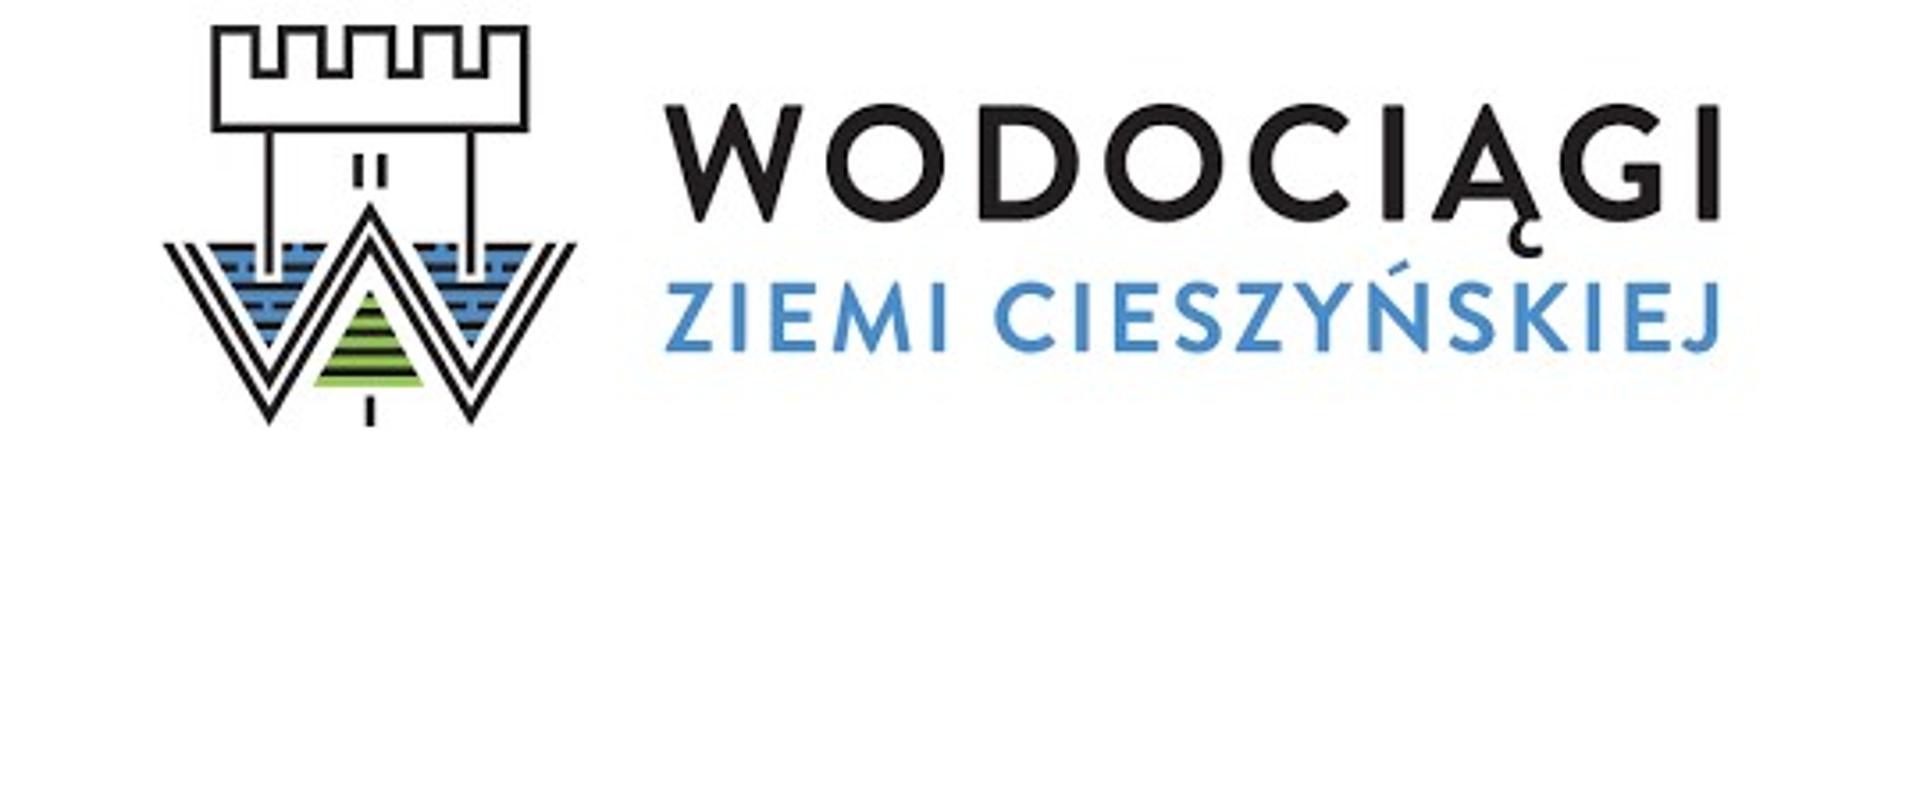 Z lewej strony stylizowany symbol cieszyńskiej wieży piastowskiej, z prawej strony dwukolorowy napis dużymi literami Wodociągi Ziemi Cieszyńskiej 